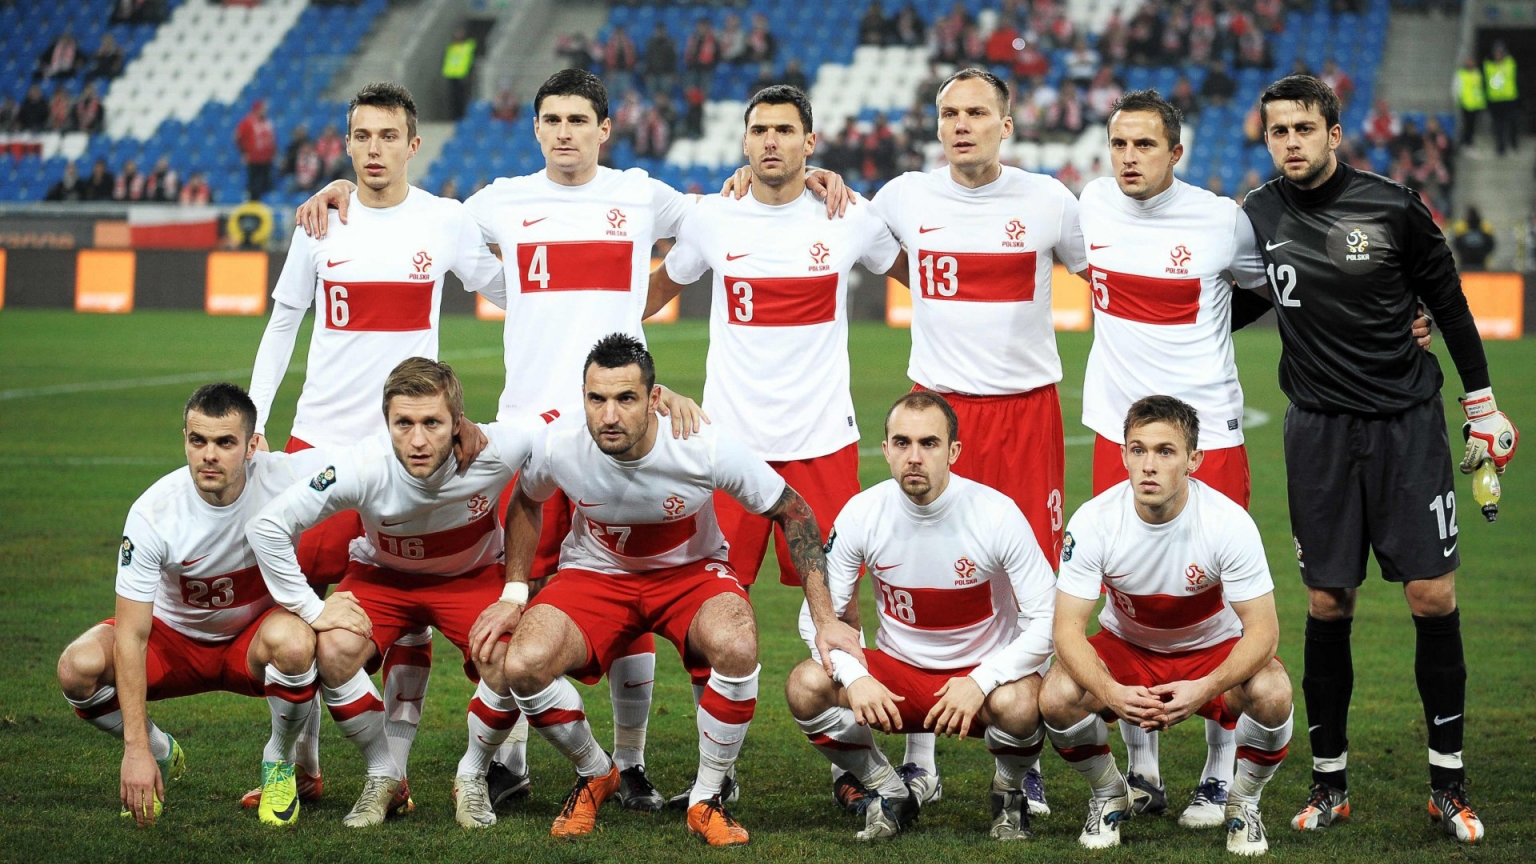 Polska National Team for 1536 x 864 HDTV resolution